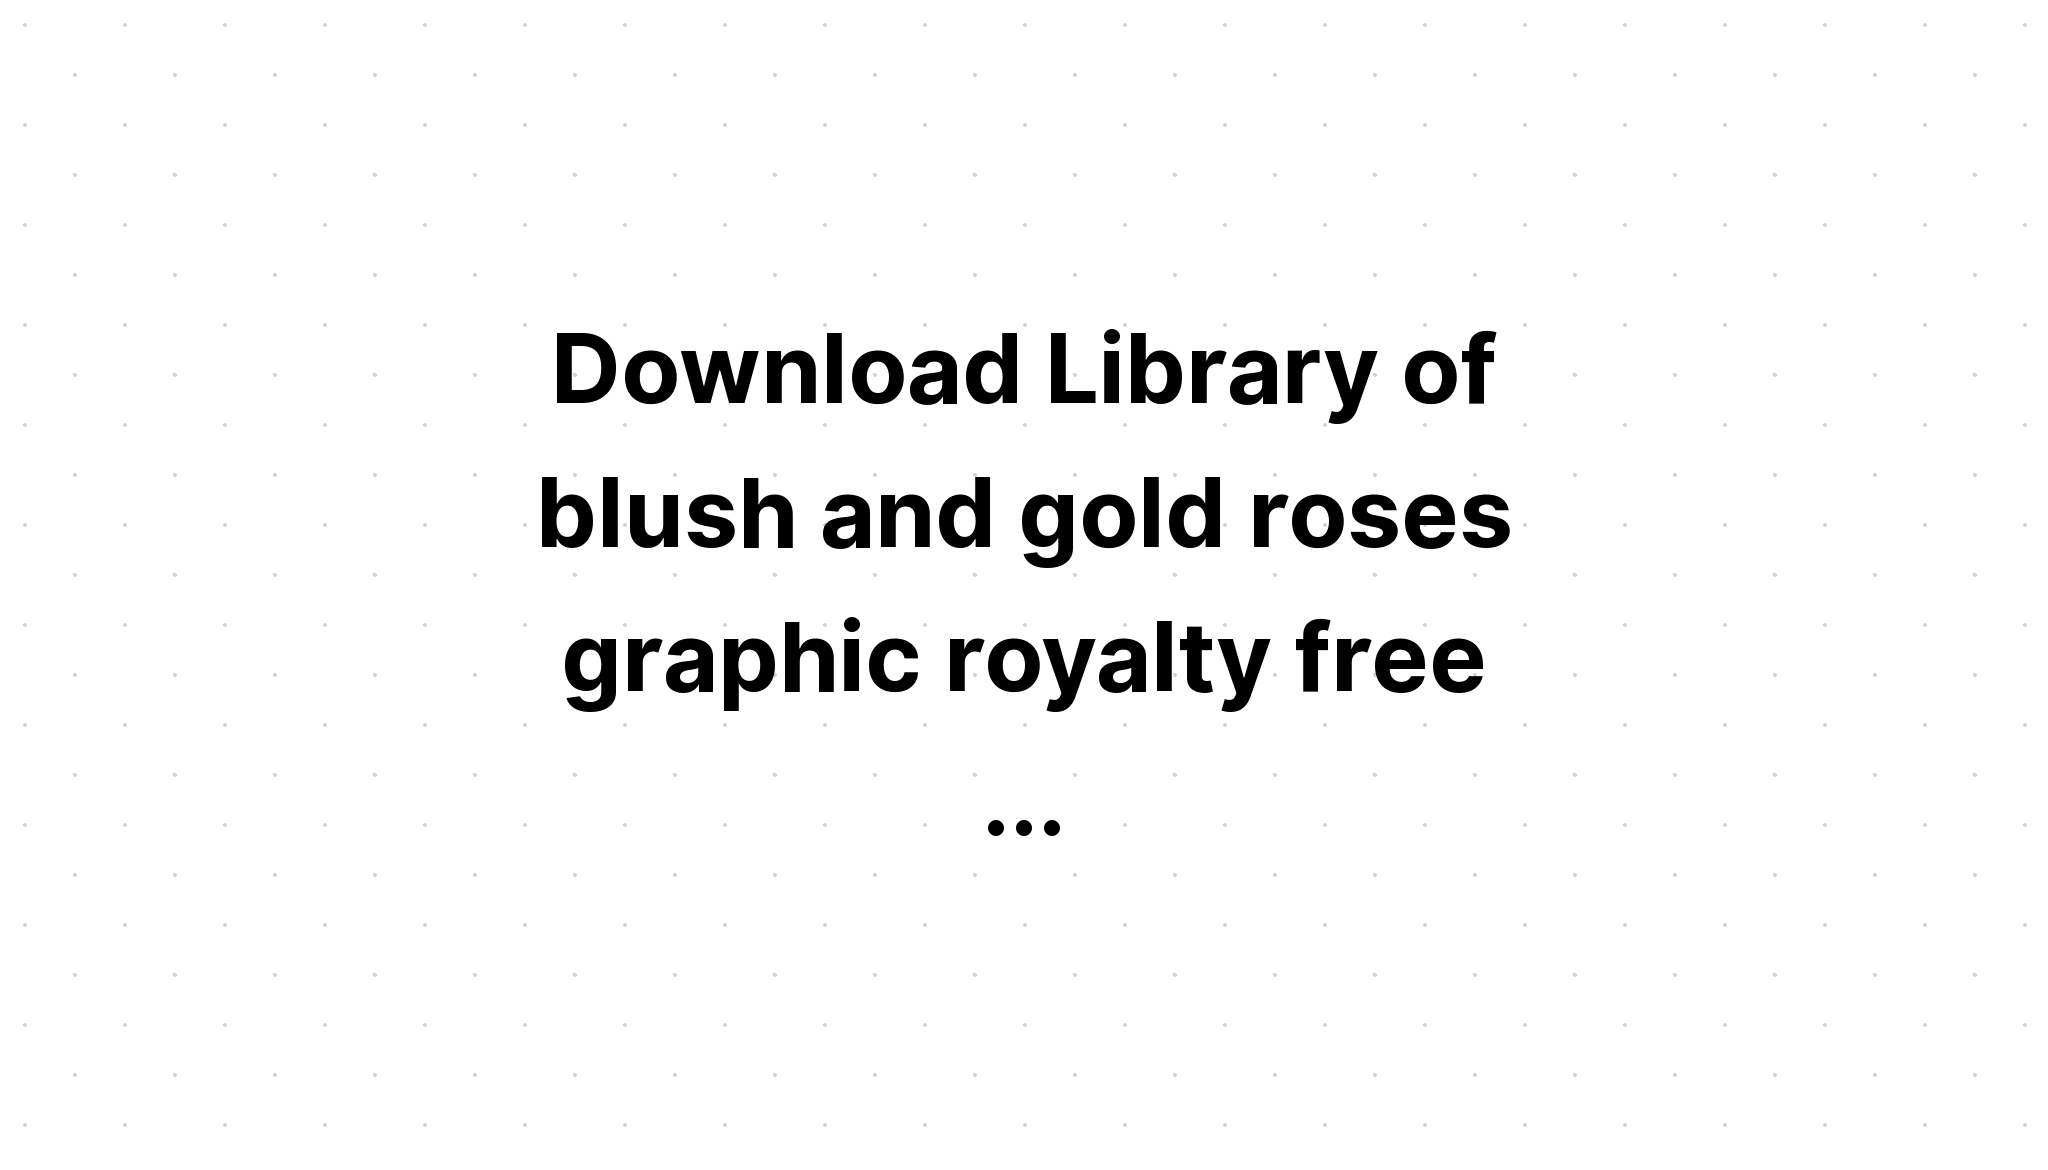 Download Blush & Rose Gold Decoration Clipart Set SVG File